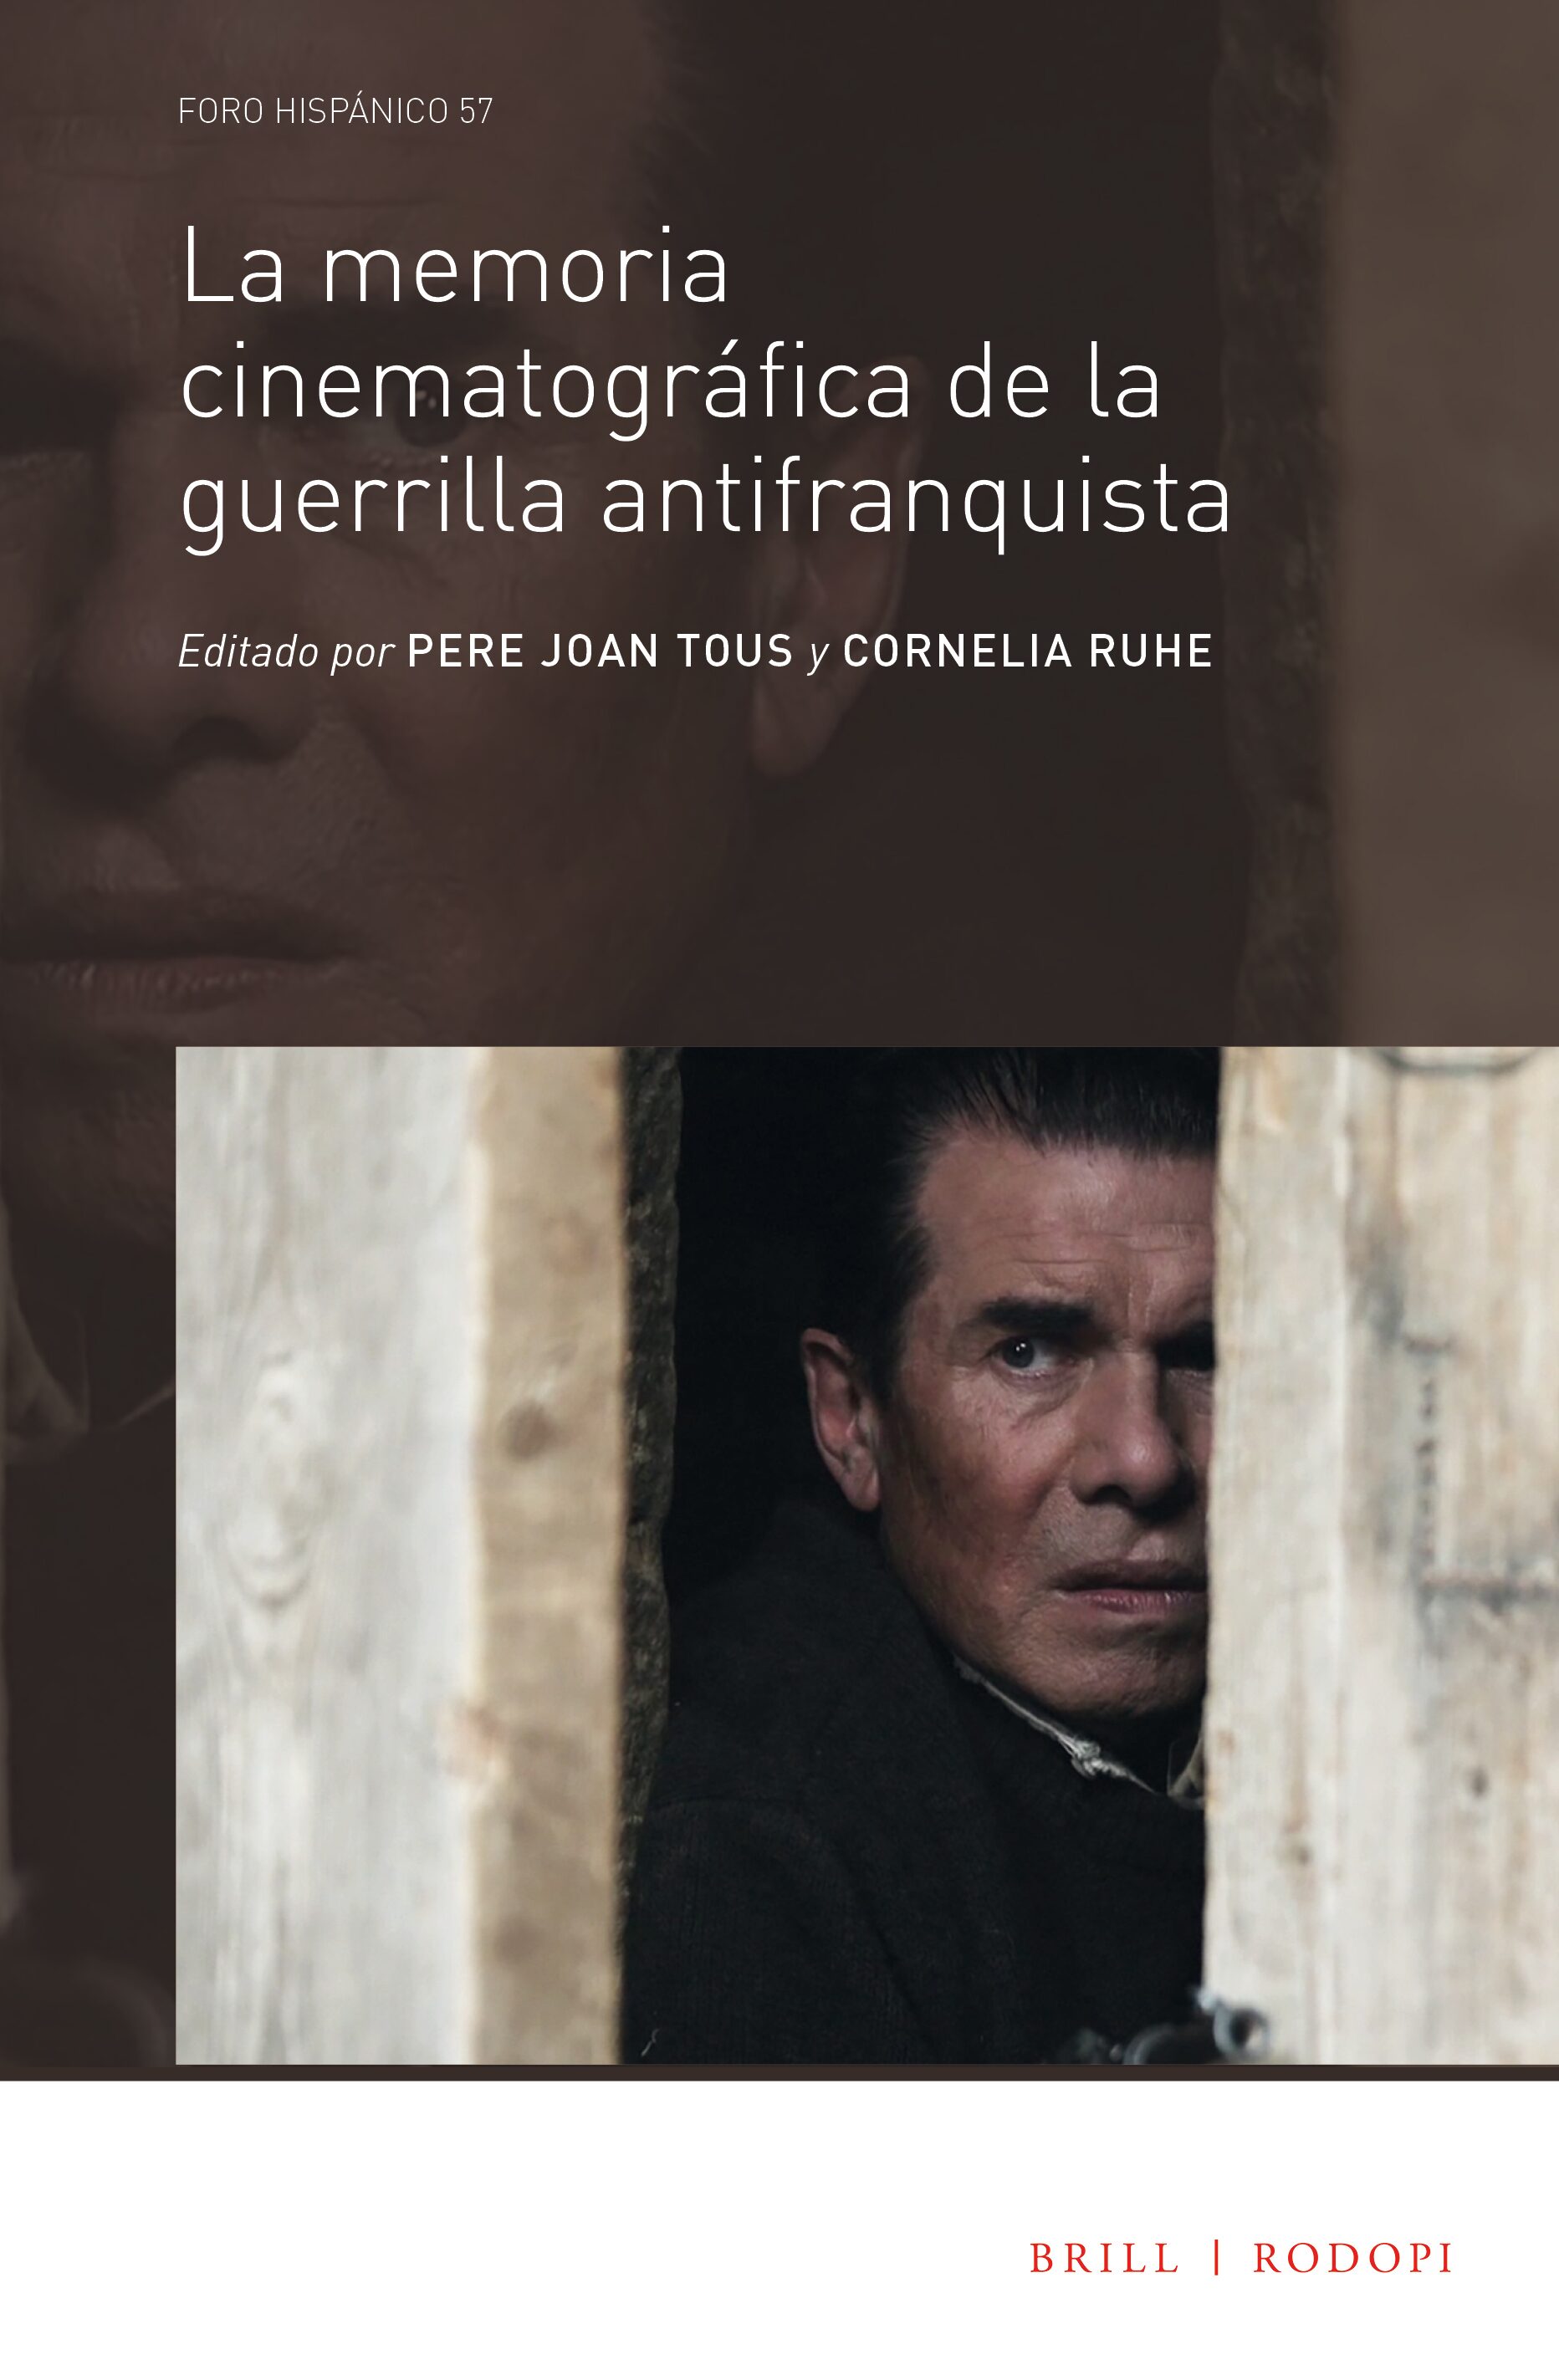 Imagen de portada del libro La memoria cinematográfica de la guerrilla antifranquista